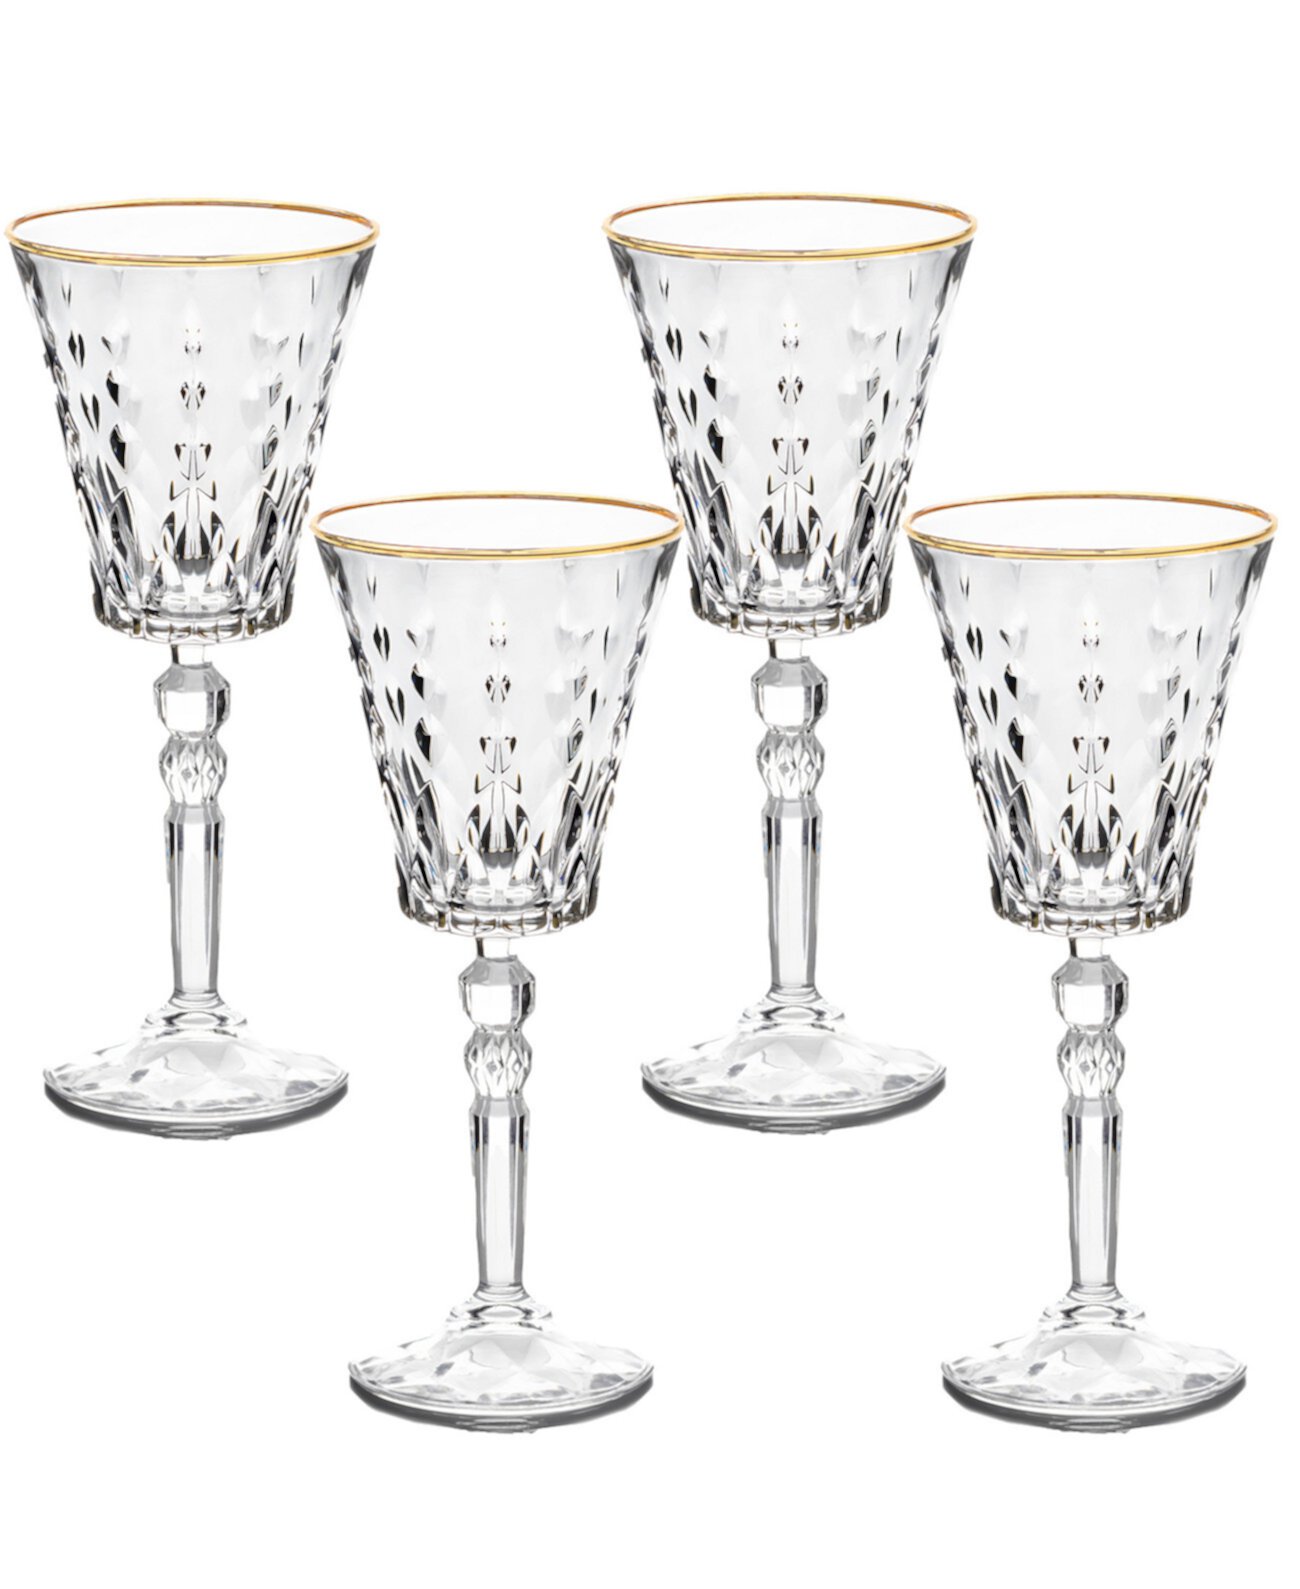 Золотистые бокалы для красного вина Marilyn, набор из 4 шт. Lorpen